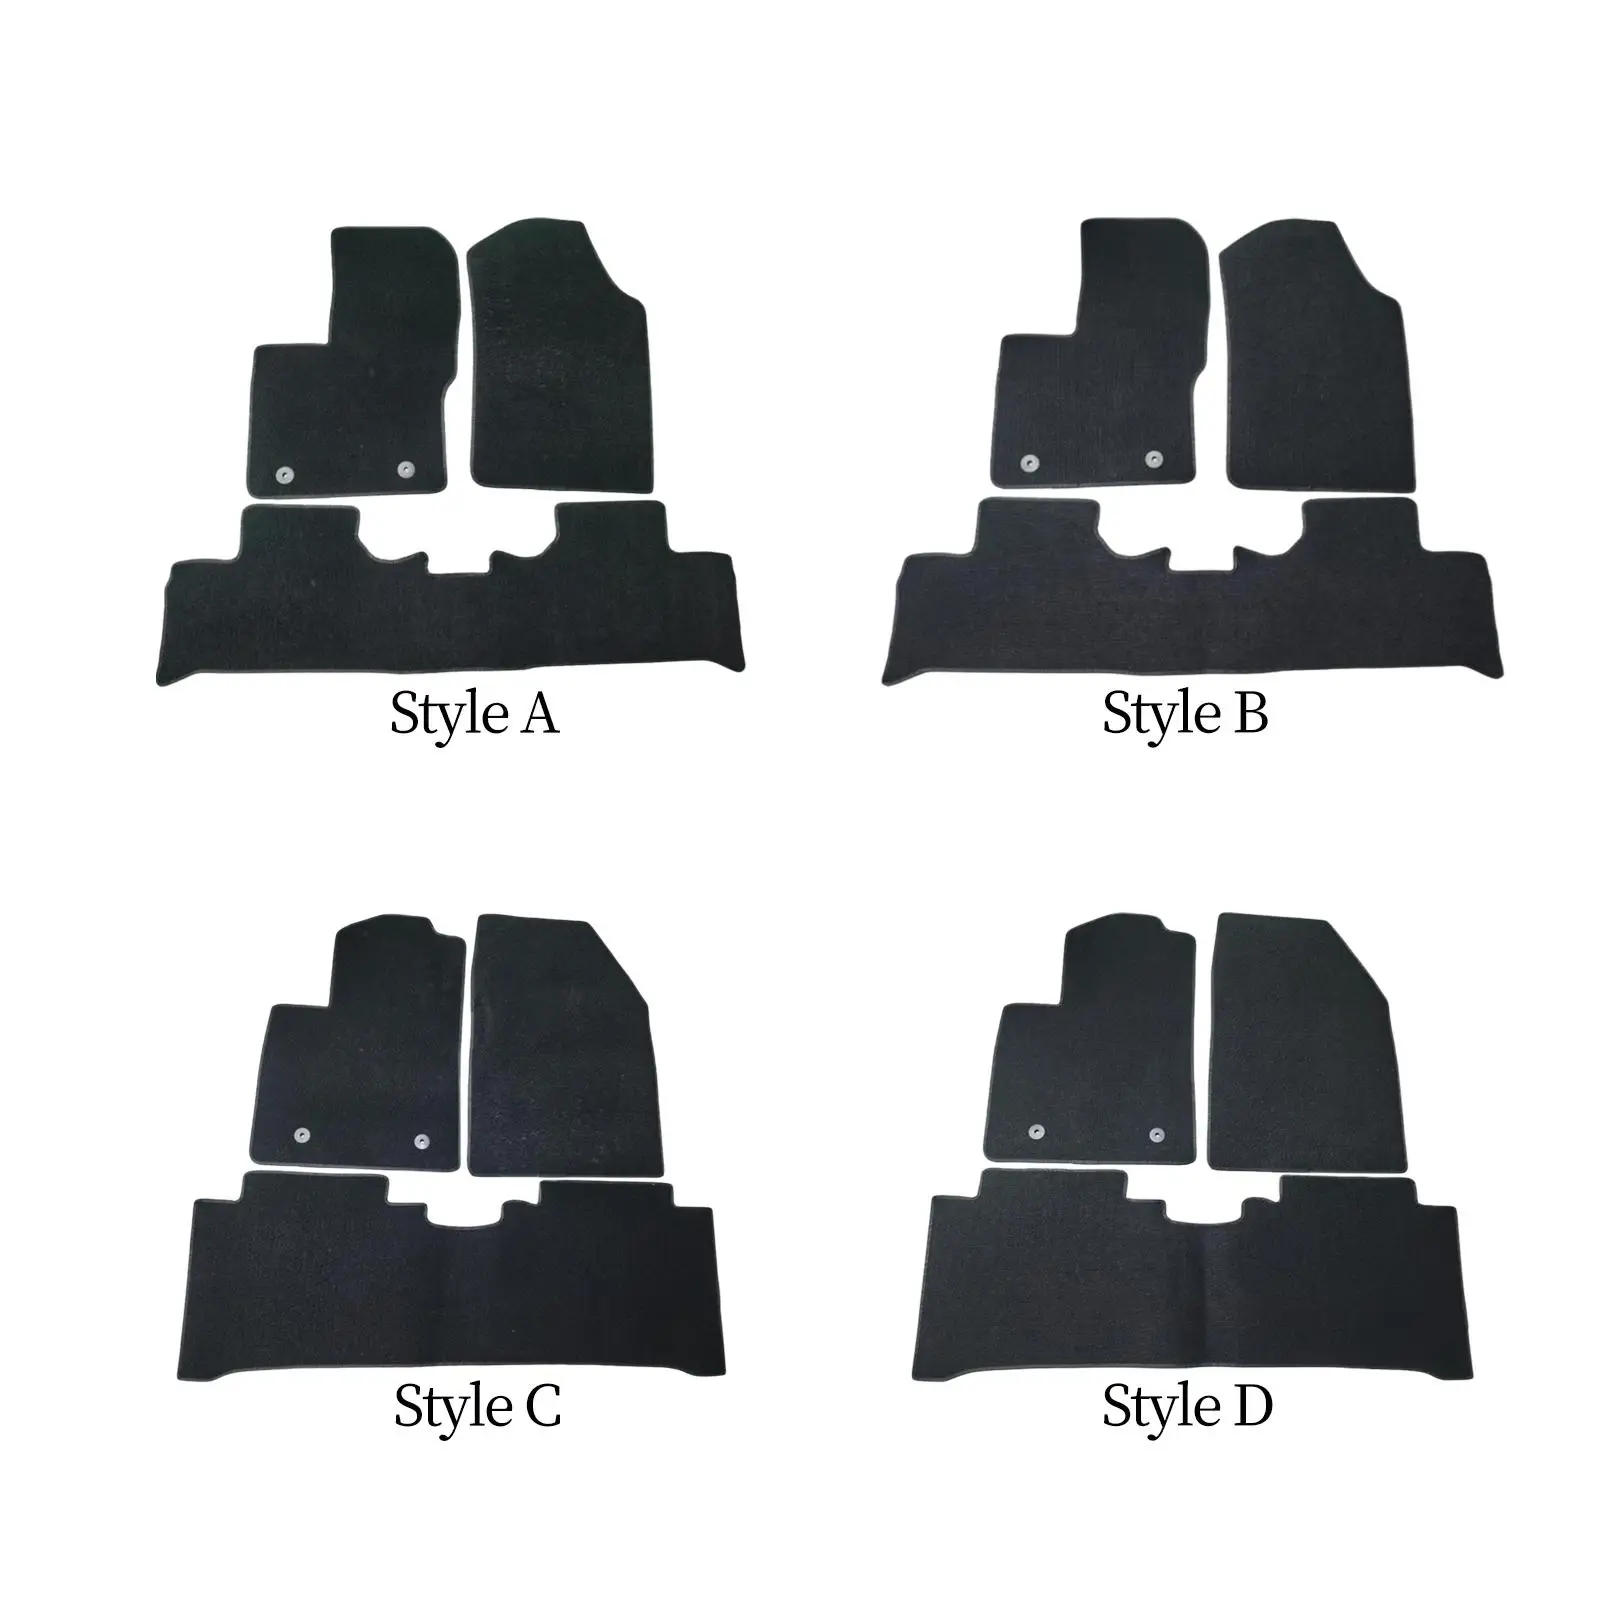 

3x автомобильные коврики, легко моющиеся передние и задние защитные автомобильные напольные коврики для Byd Yuan Pro, аксессуары высокого качества